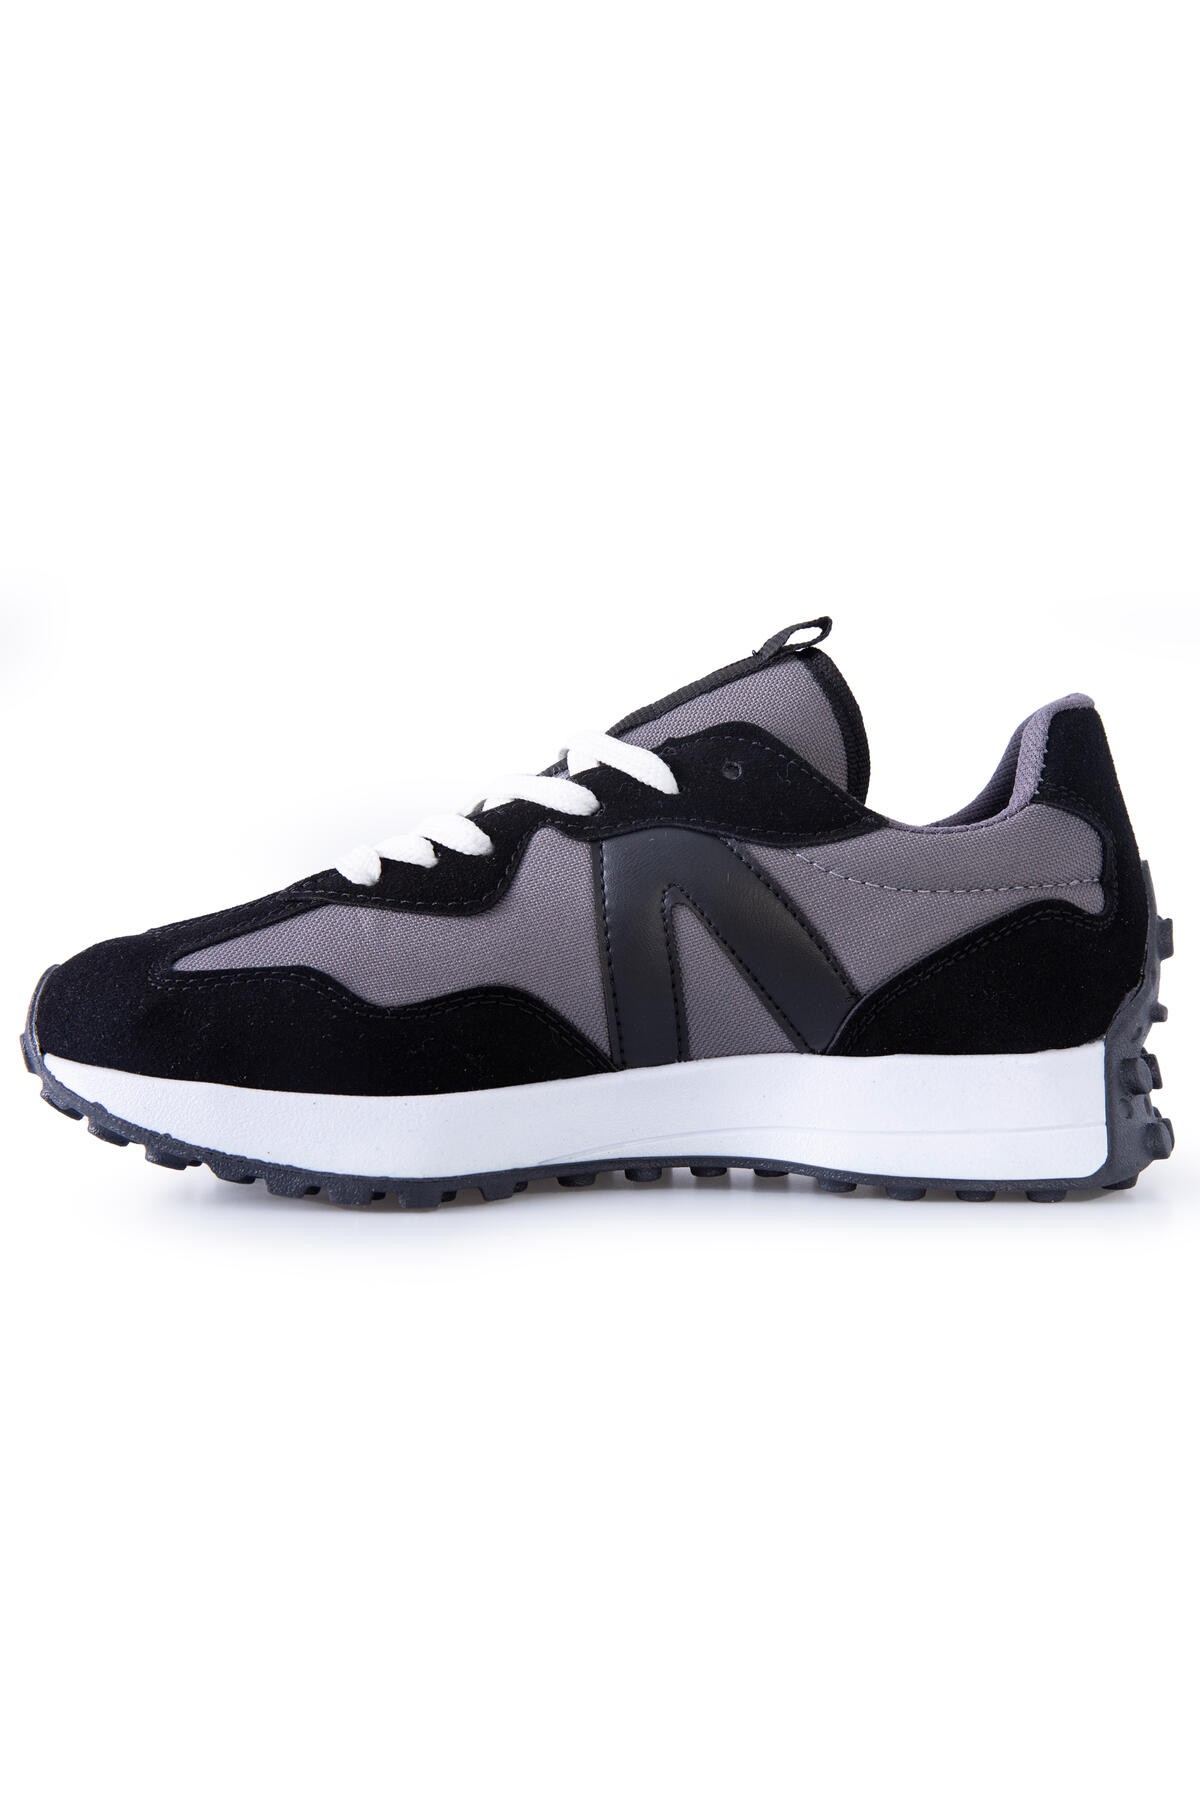 Siyah Mantar Topuk Detaylı Bağcıklı Erkek Spor Ayakkabı - 89095